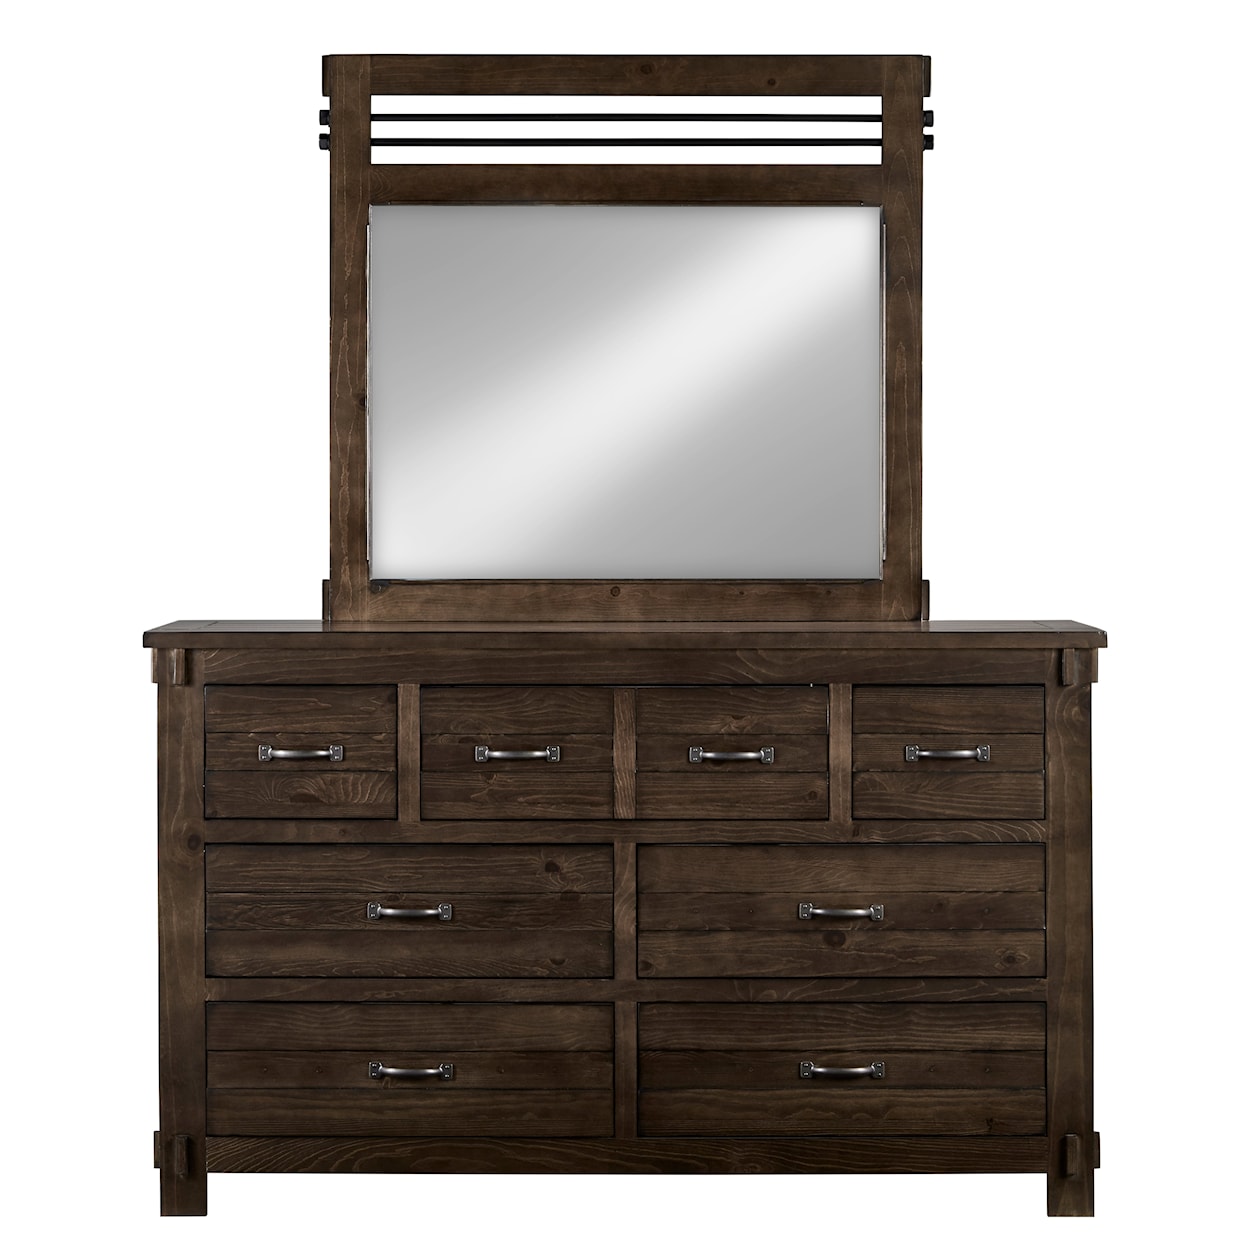 Progressive Furniture Thackery Drawer Dresser/Mirror